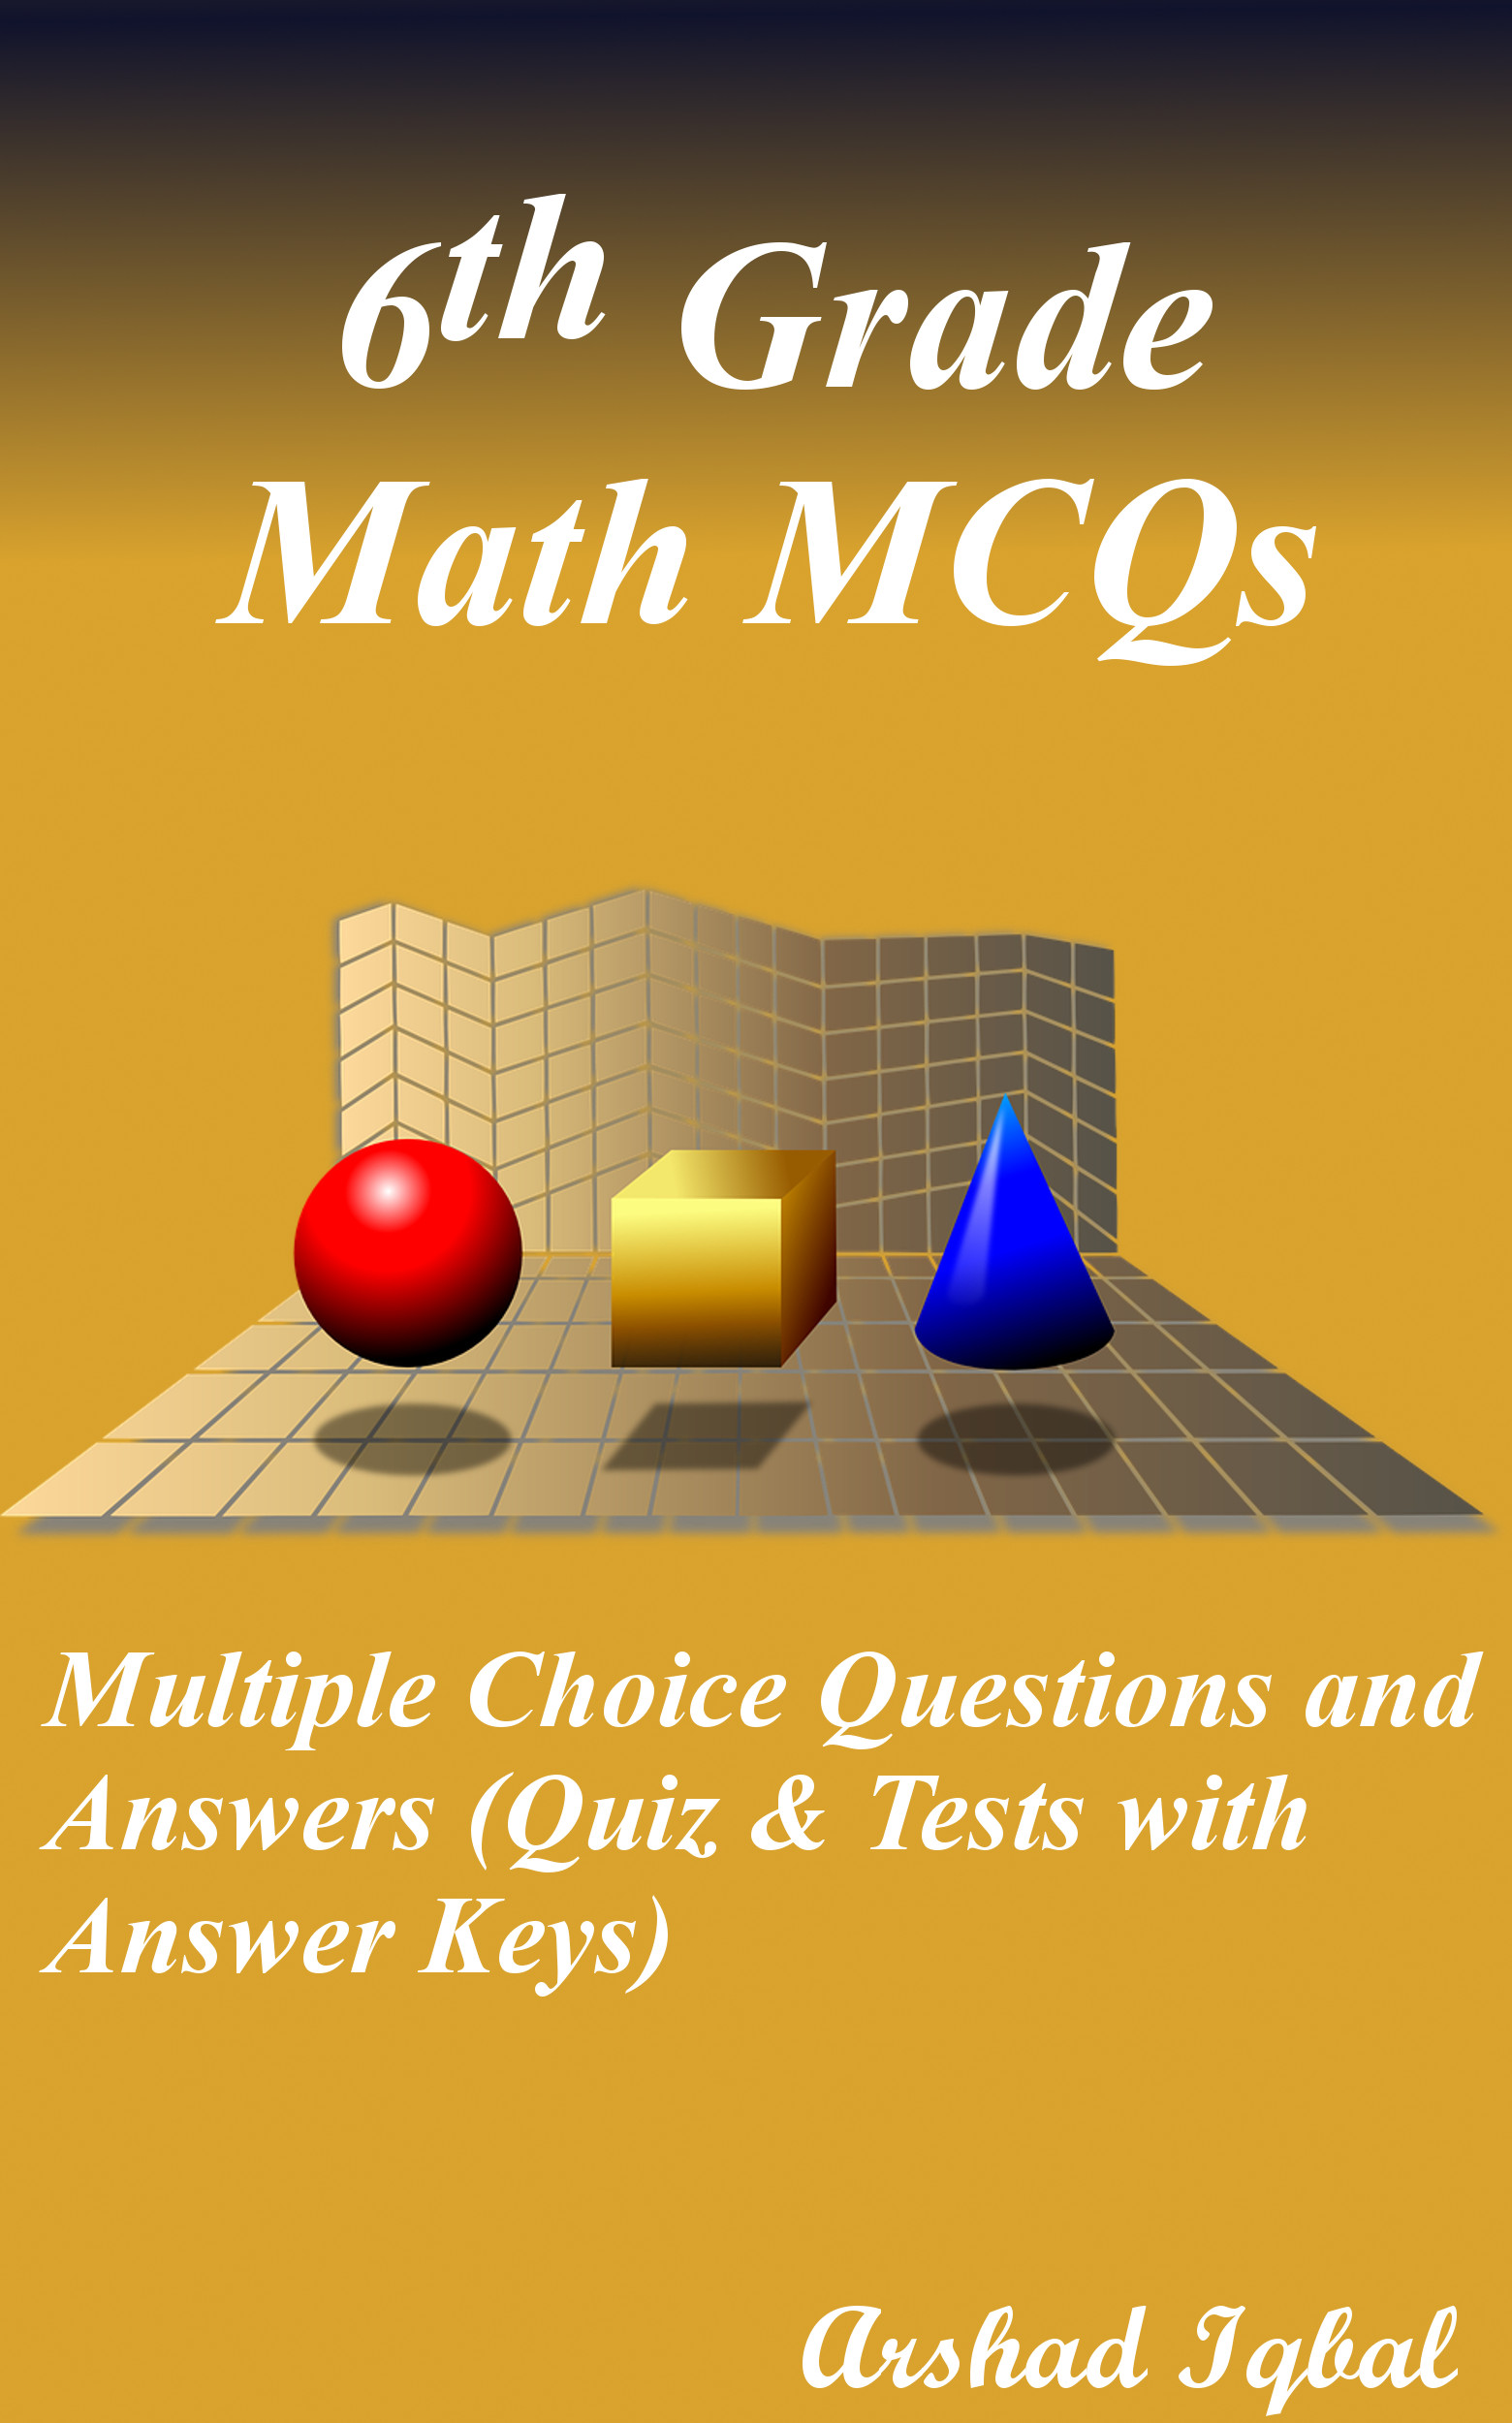 6th Grade Math MCQ Book PDF